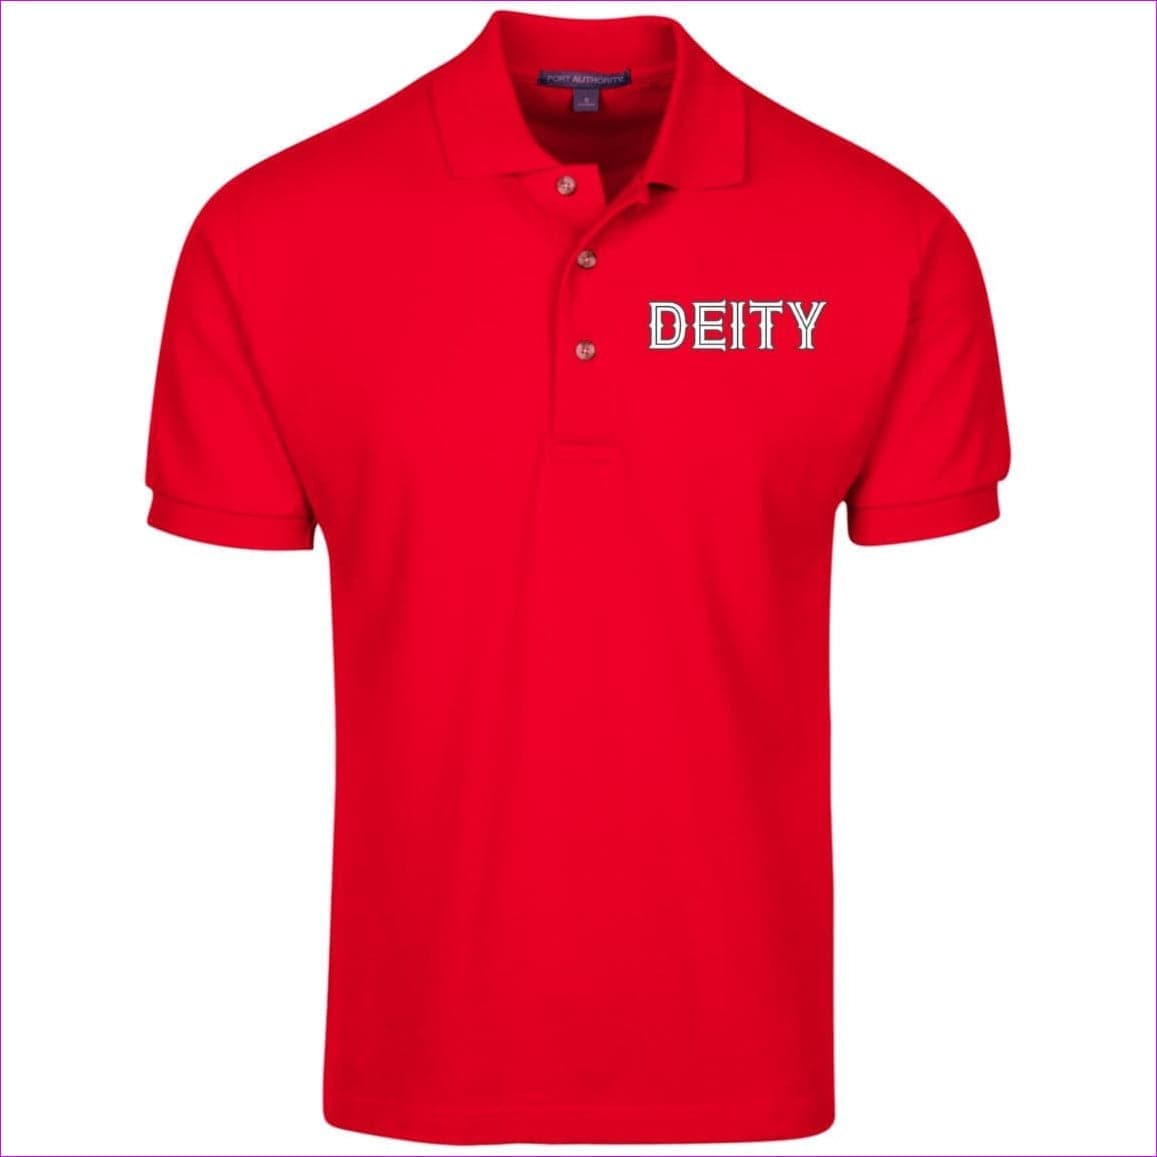 Red Deity Cotton Pique Knit Polo - men's polo shirt at TFC&H Co.